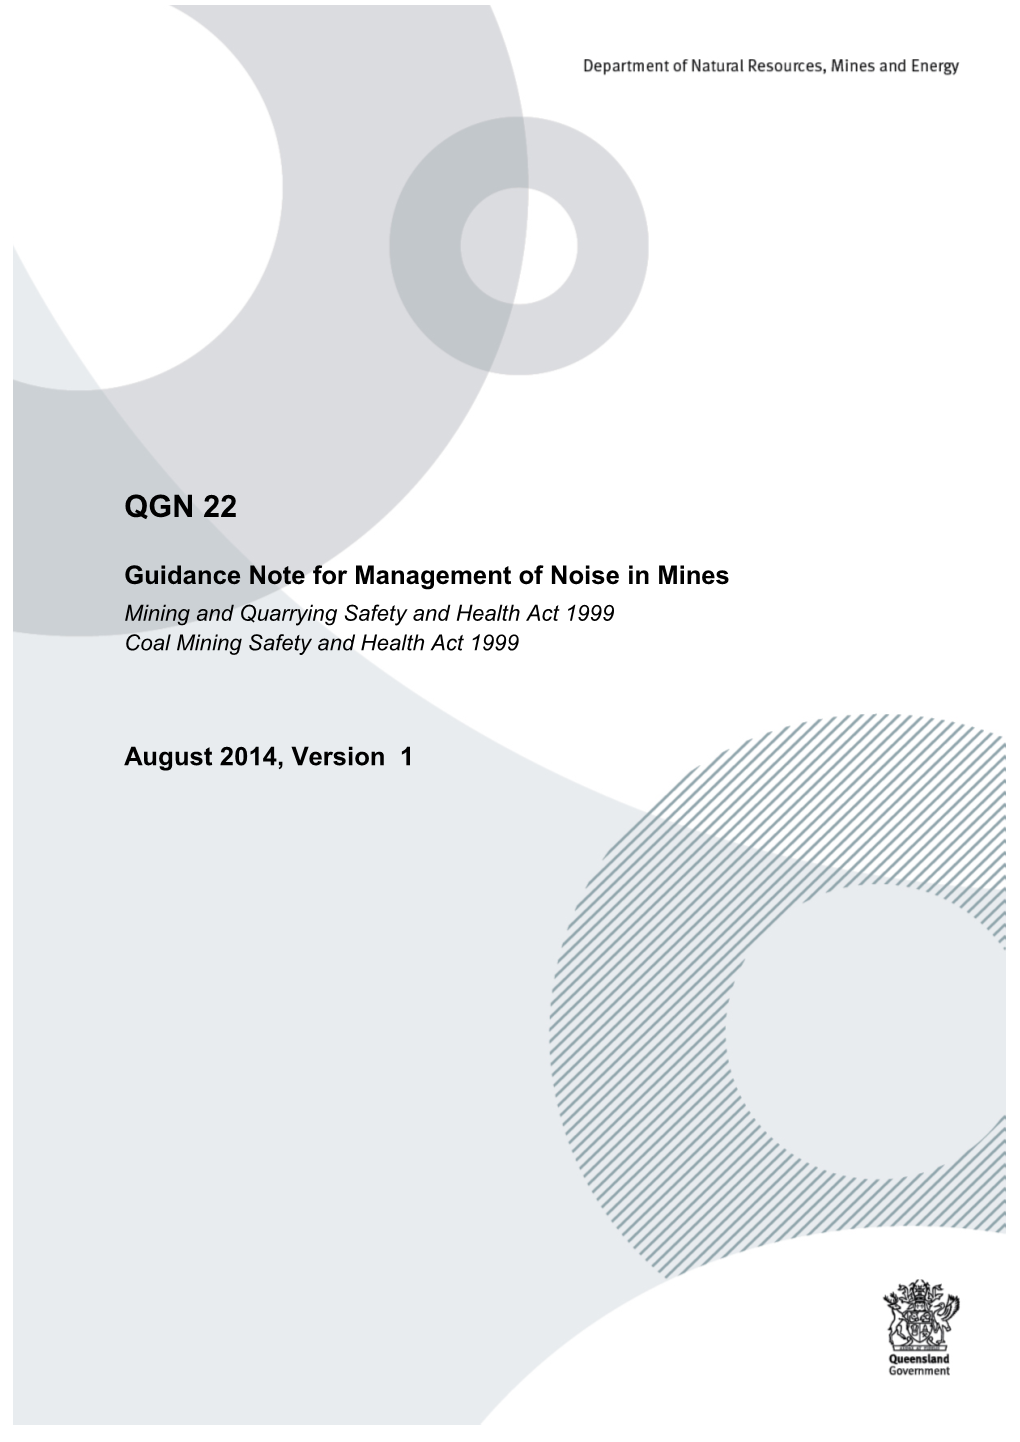 QGN 22 Noise Management